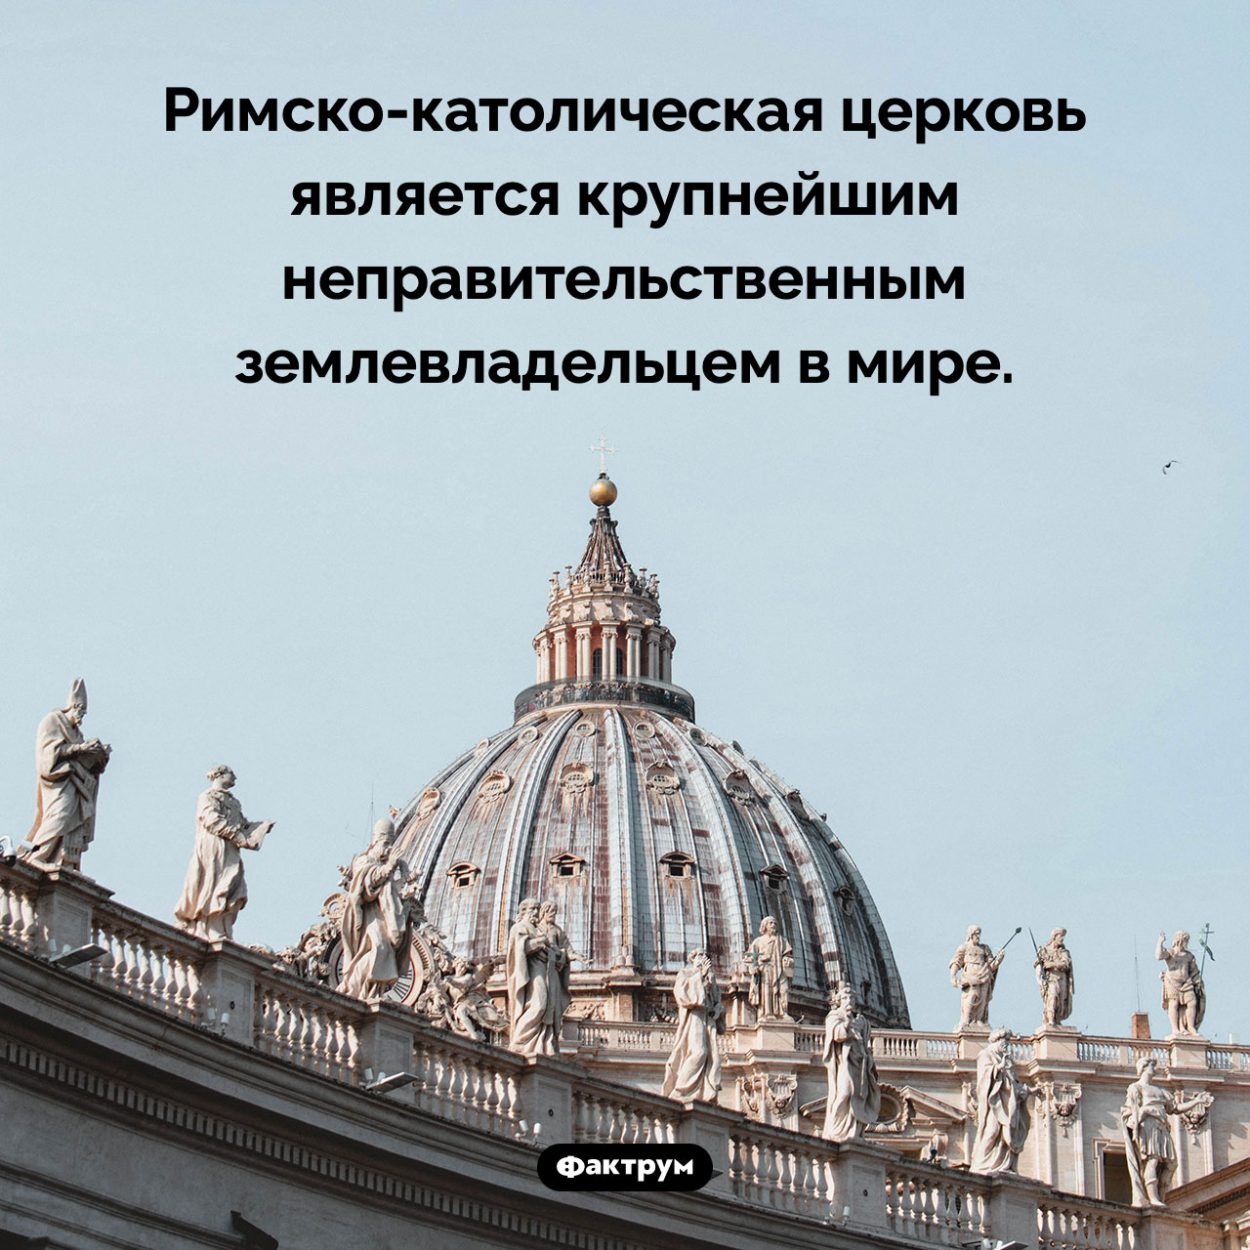 Крупнейший в мире землевладелец. Римско-католическая церковь является крупнейшим неправительственным землевладельцем в мире.